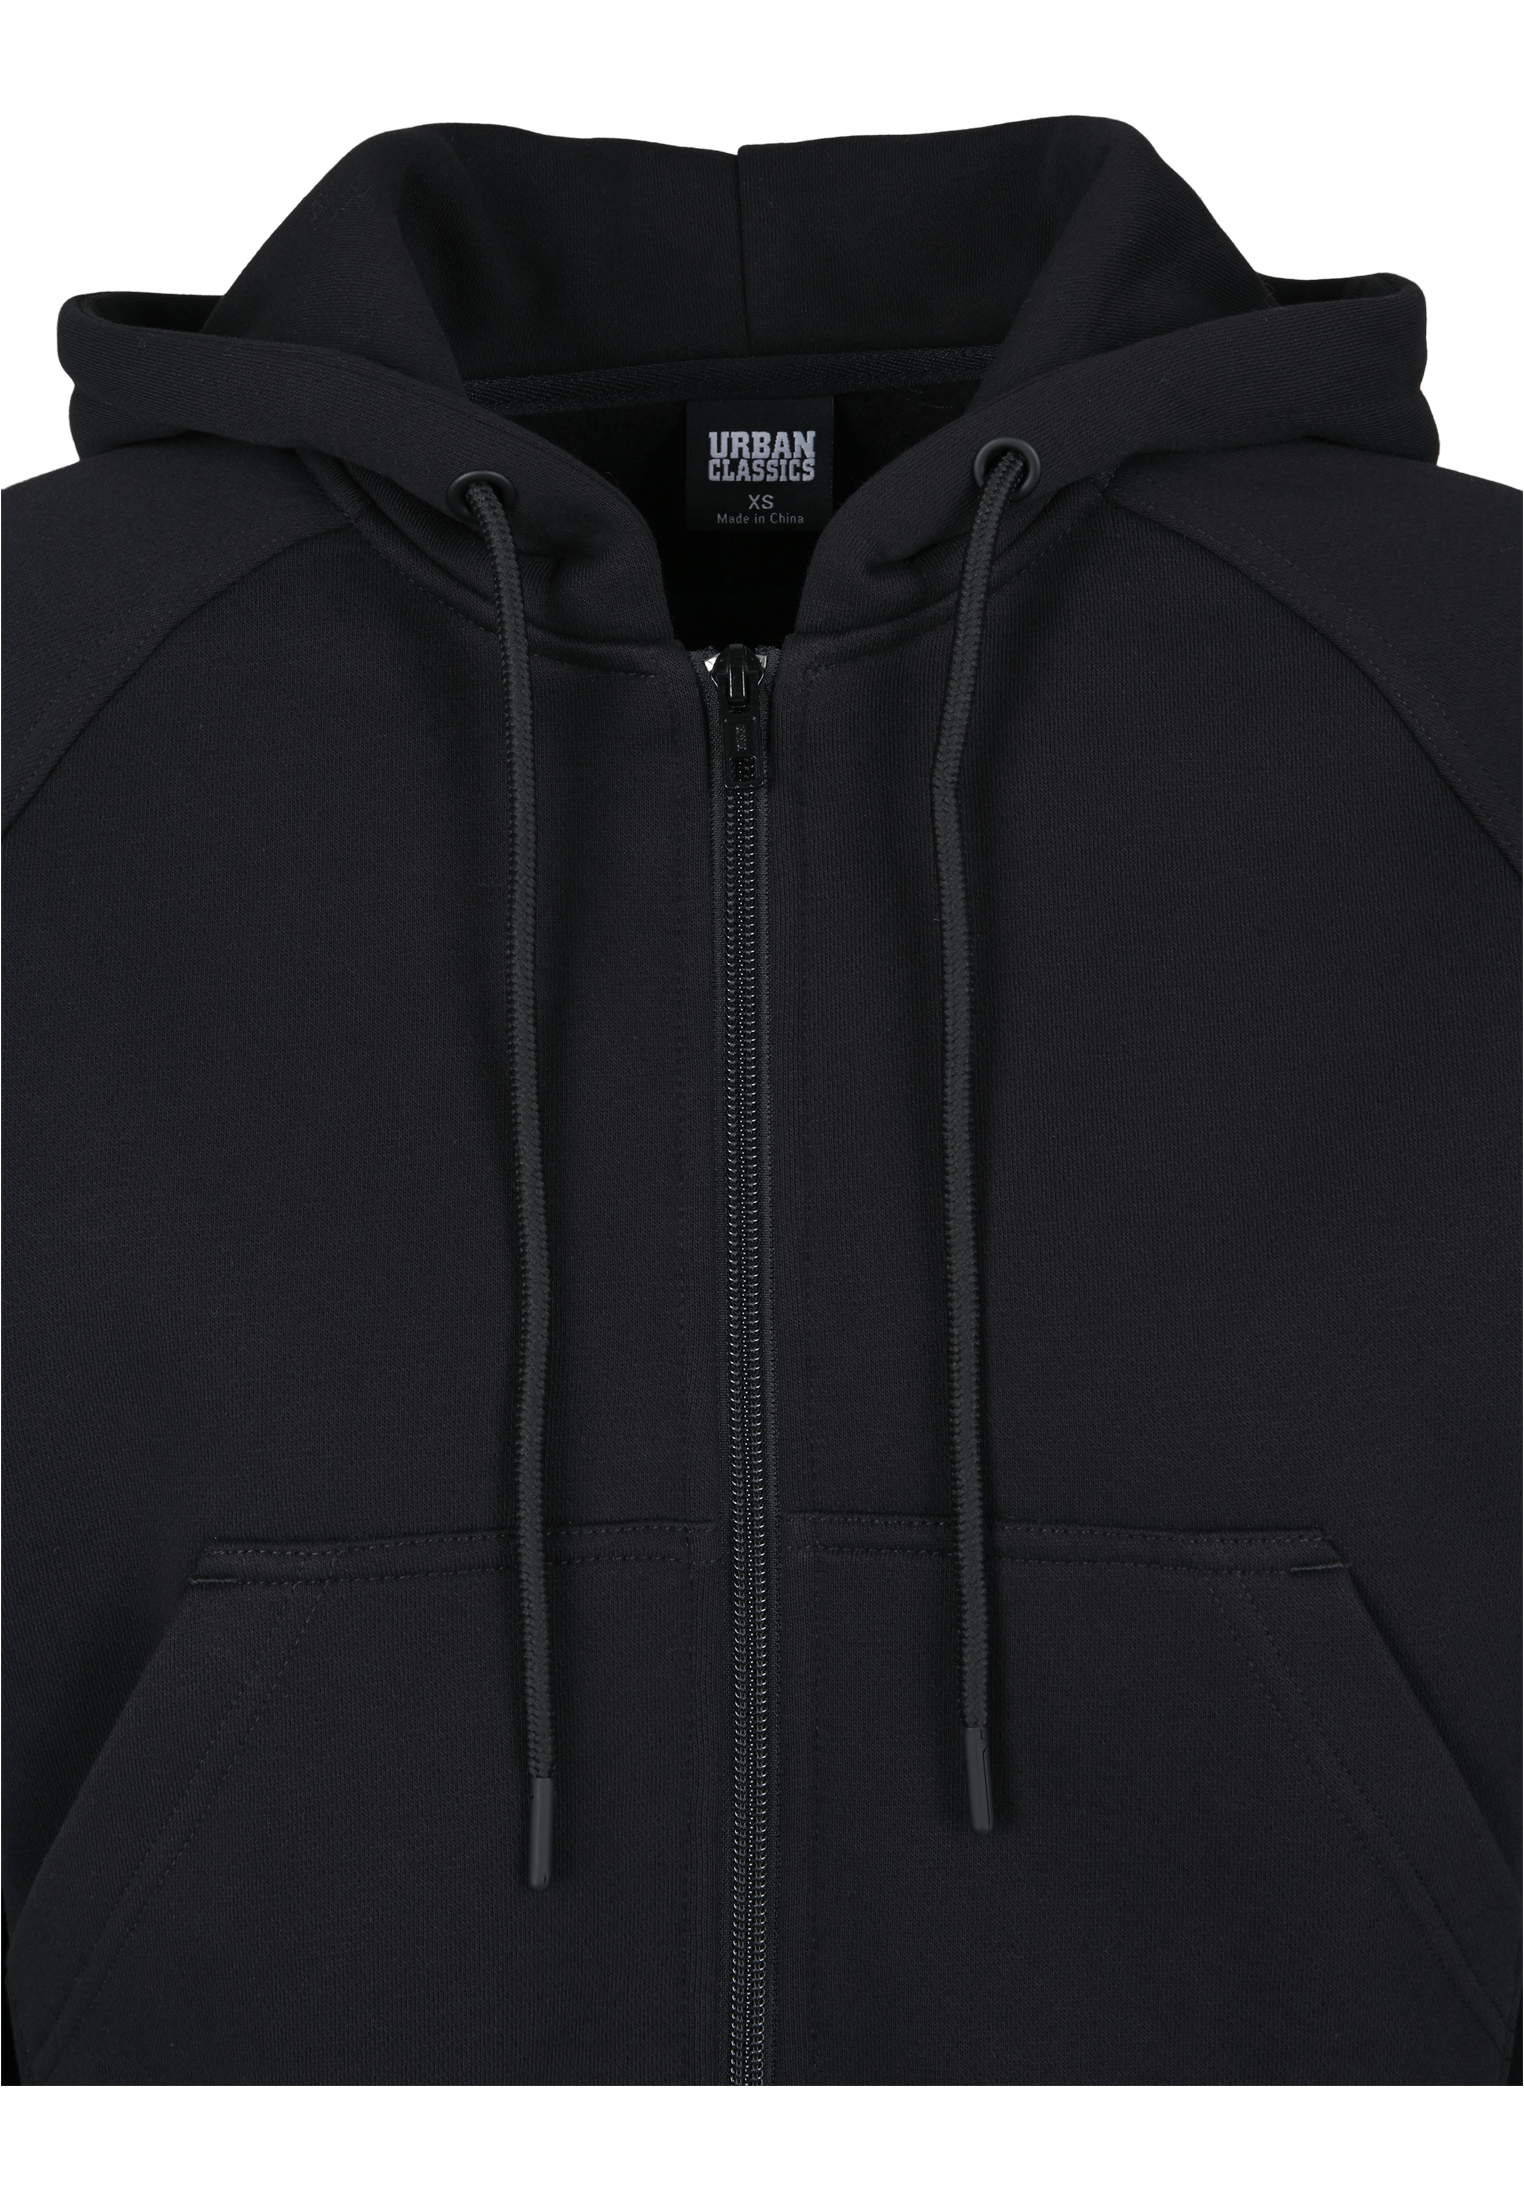 Zip Hoodies Ladies Oversized Short Raglan Zip Hoody in Farbe black